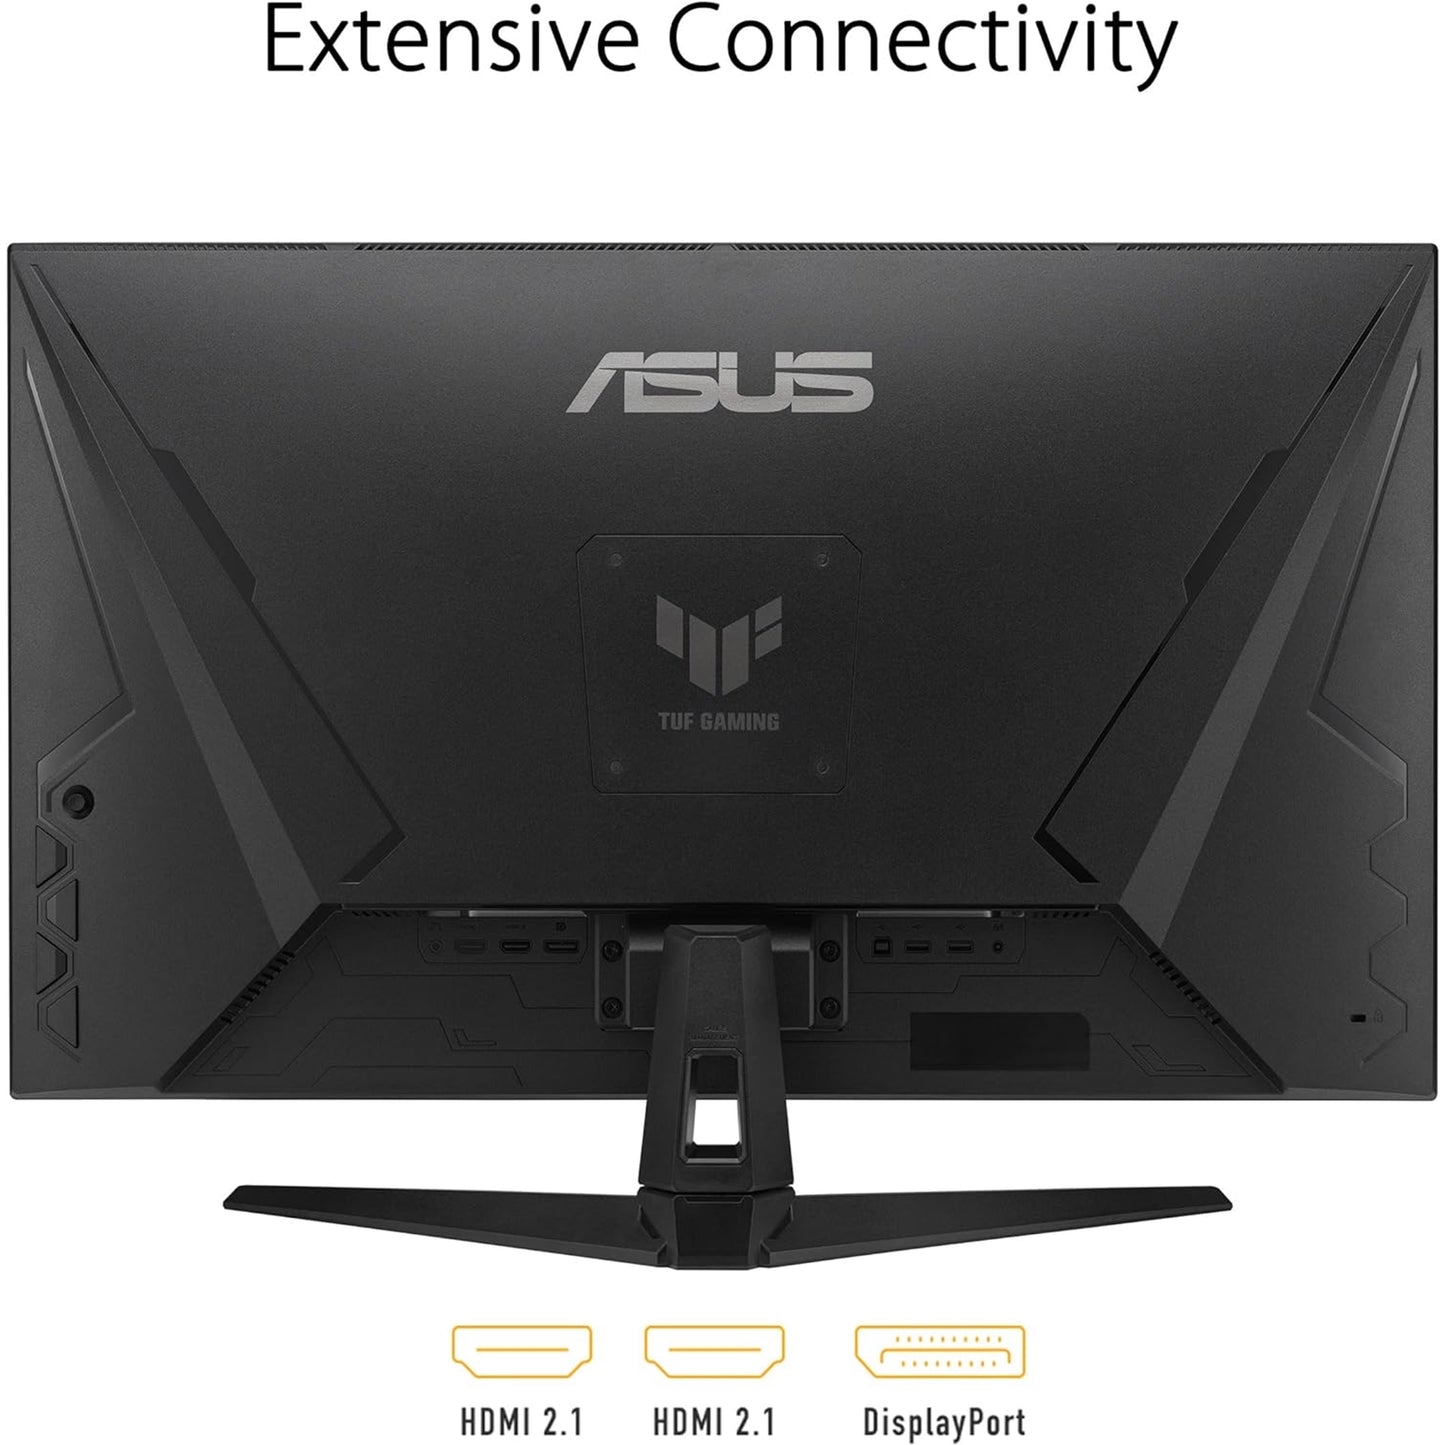 شاشة ASUS TUF Gaming مقاس 32 بوصة (31.5 بوصة قابلة للعرض) بدقة 1080 بكسل (VG328QA1A) - دقة عالية كاملة، 170 هرتز، 1 مللي ثانية، ضبابية حركة منخفضة للغاية، FreeSync Premium، العناية بالعين، تعزيز الظل، HDMI، قابل للتعديل للإمالة، أسود 